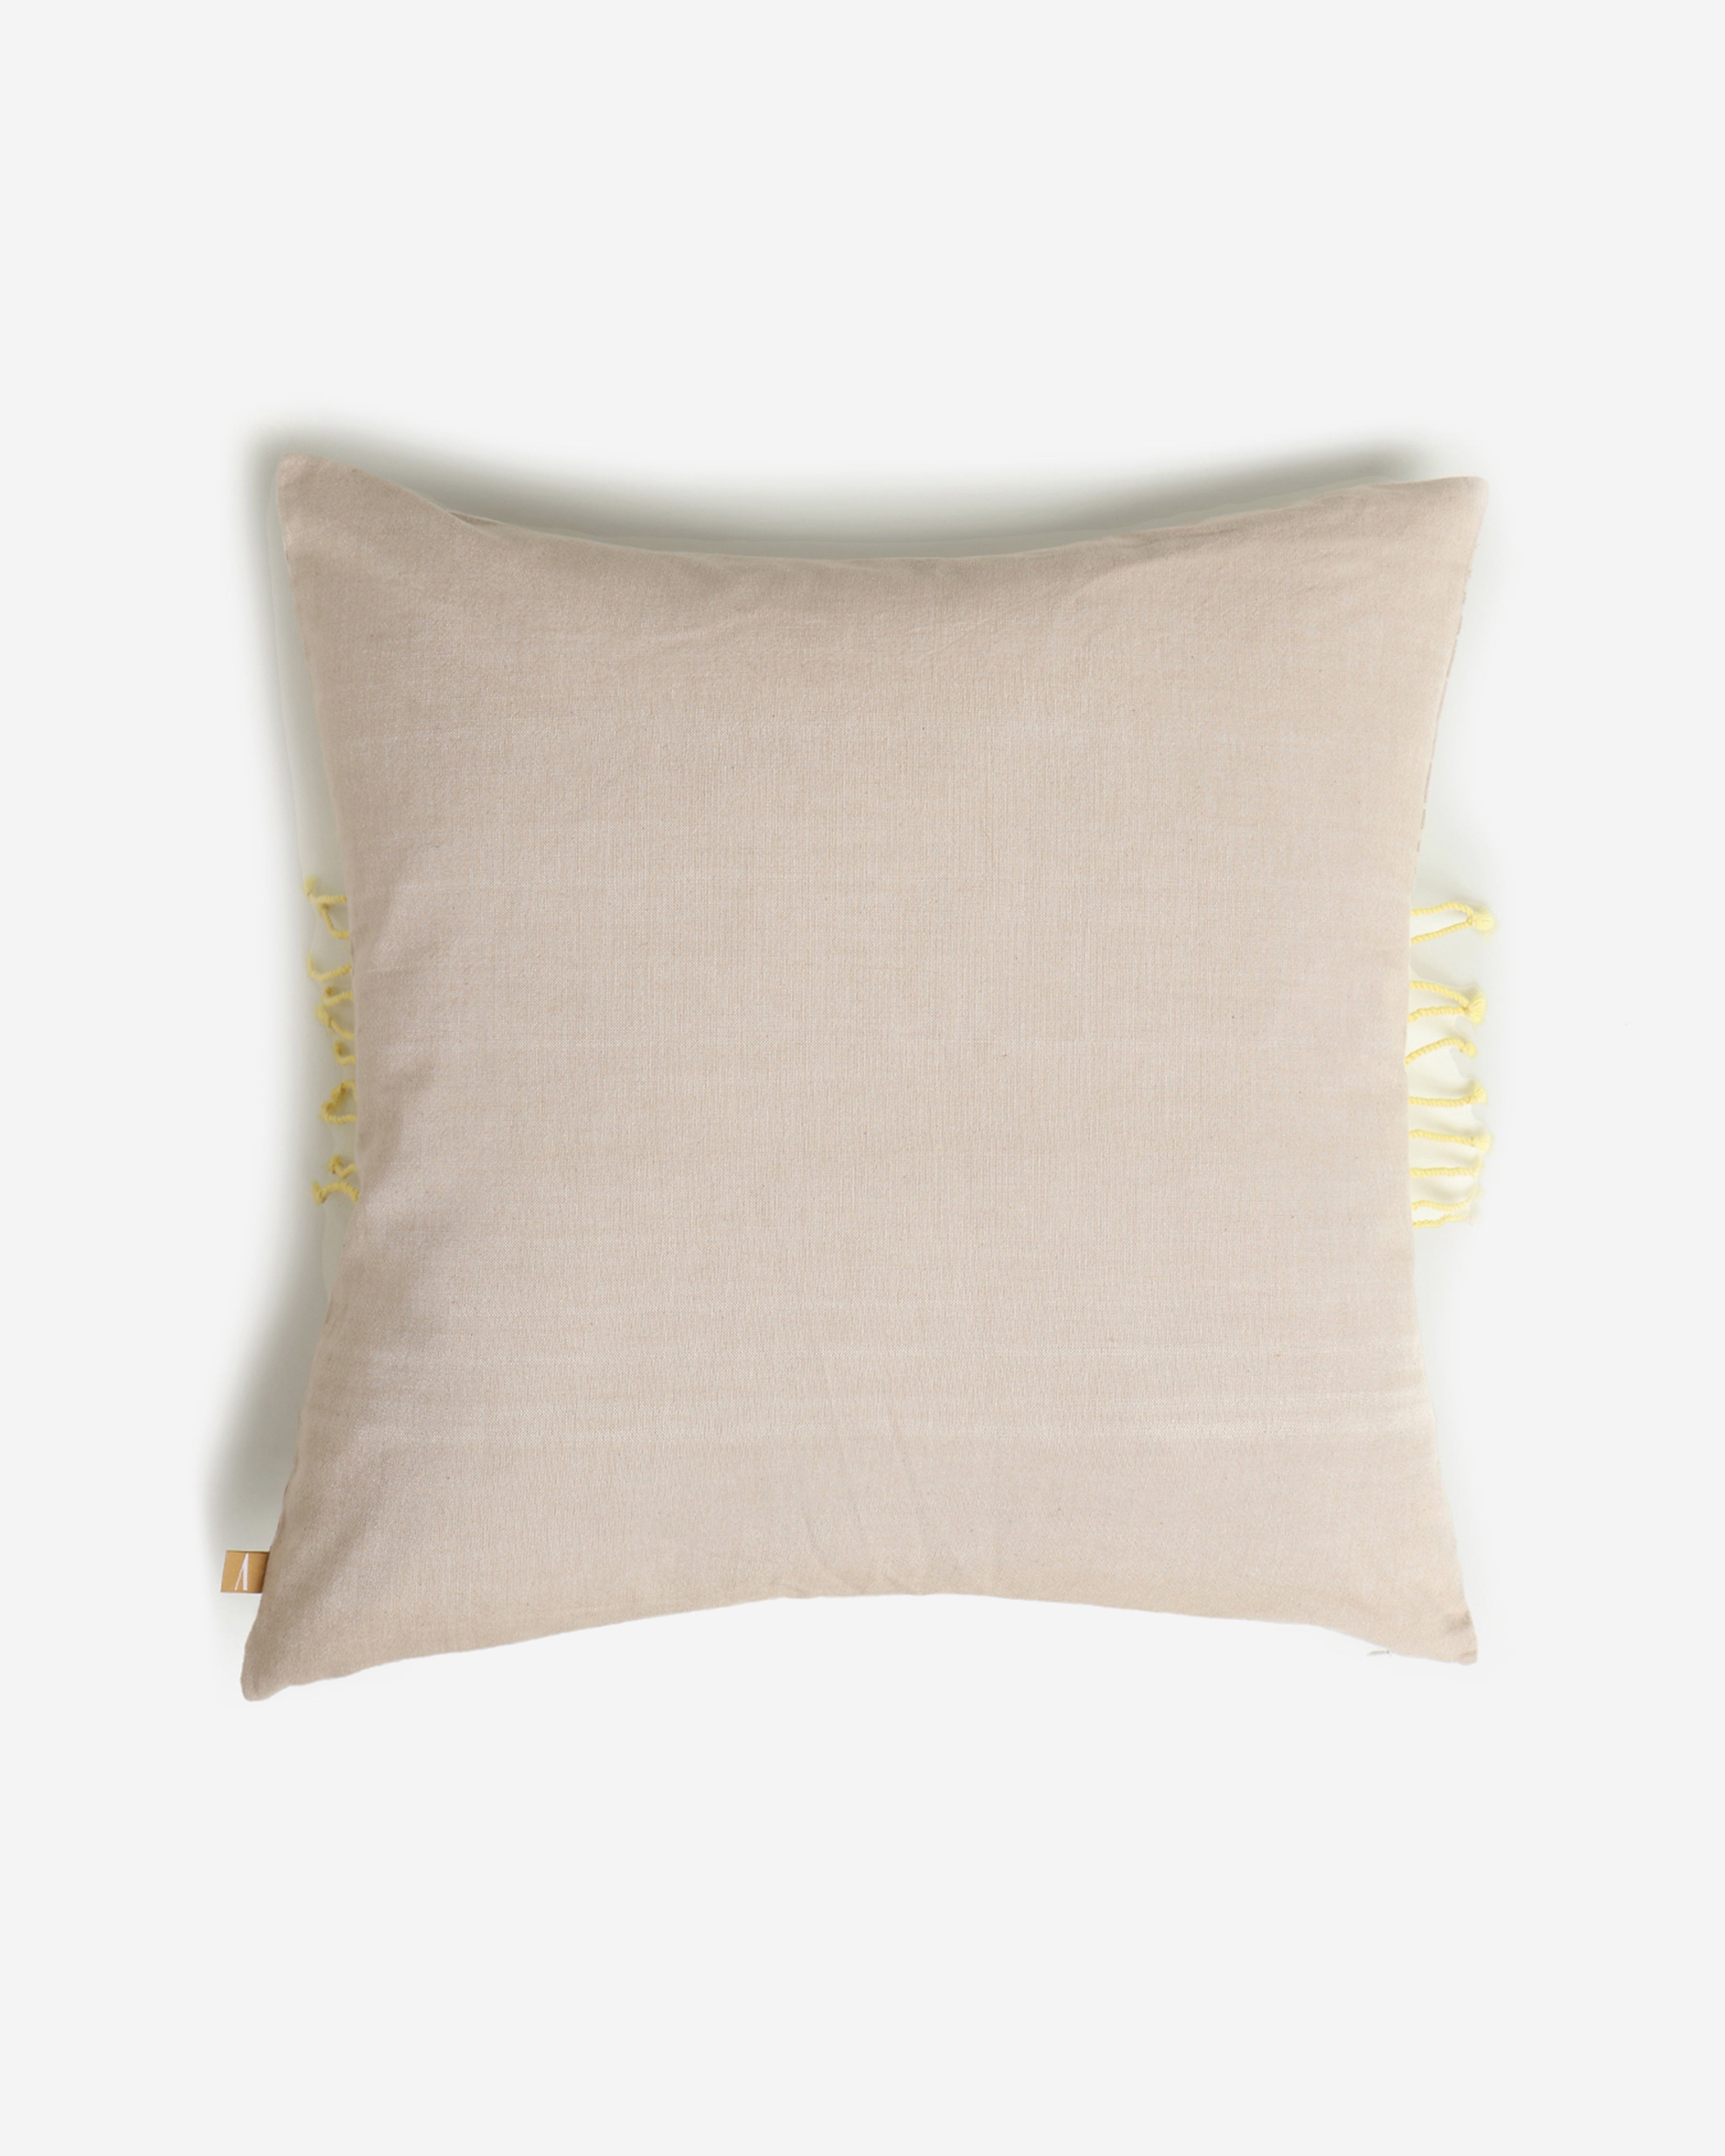 Ombushion Extra Weft Cotton Cushion Cover - Light Beige